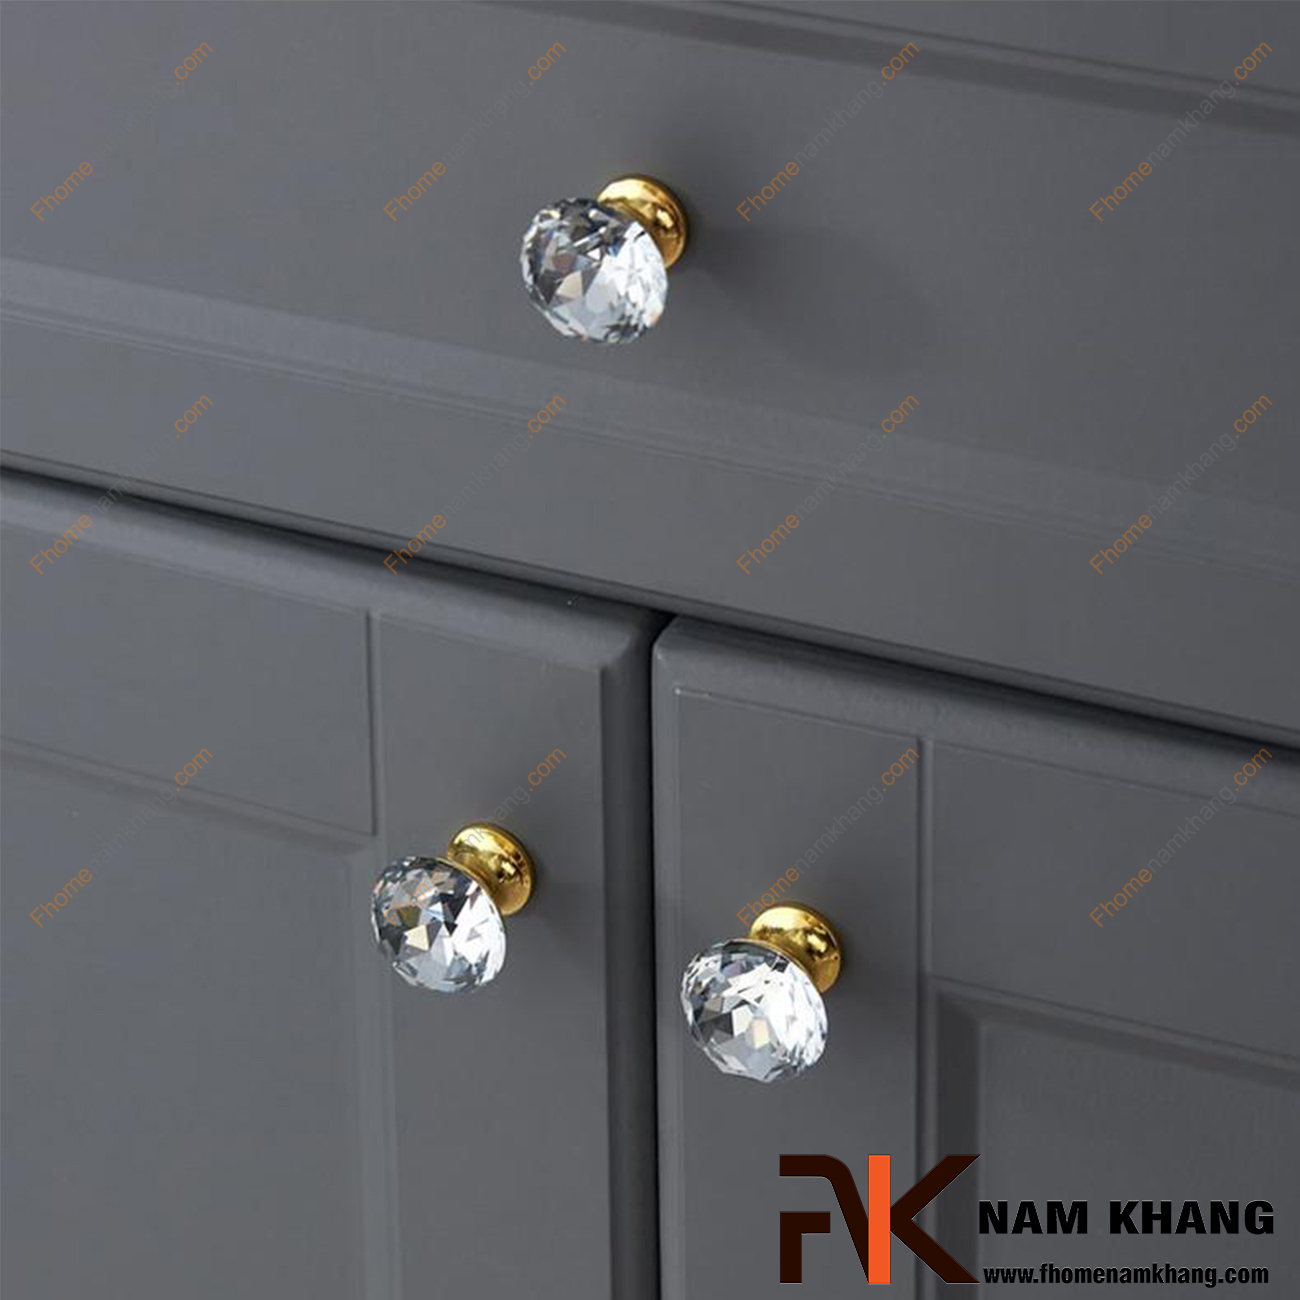 Núm cửa tủ dạng tròn pha lê chân đế vàng bóng NK295-TV, điểm nhấn ấn tượng trong thiết kế nội ngoại thất. Theo phong thủy, pha lê là biểu tượng của những điều tốt lành, may mắn và những điều tươi đẹp